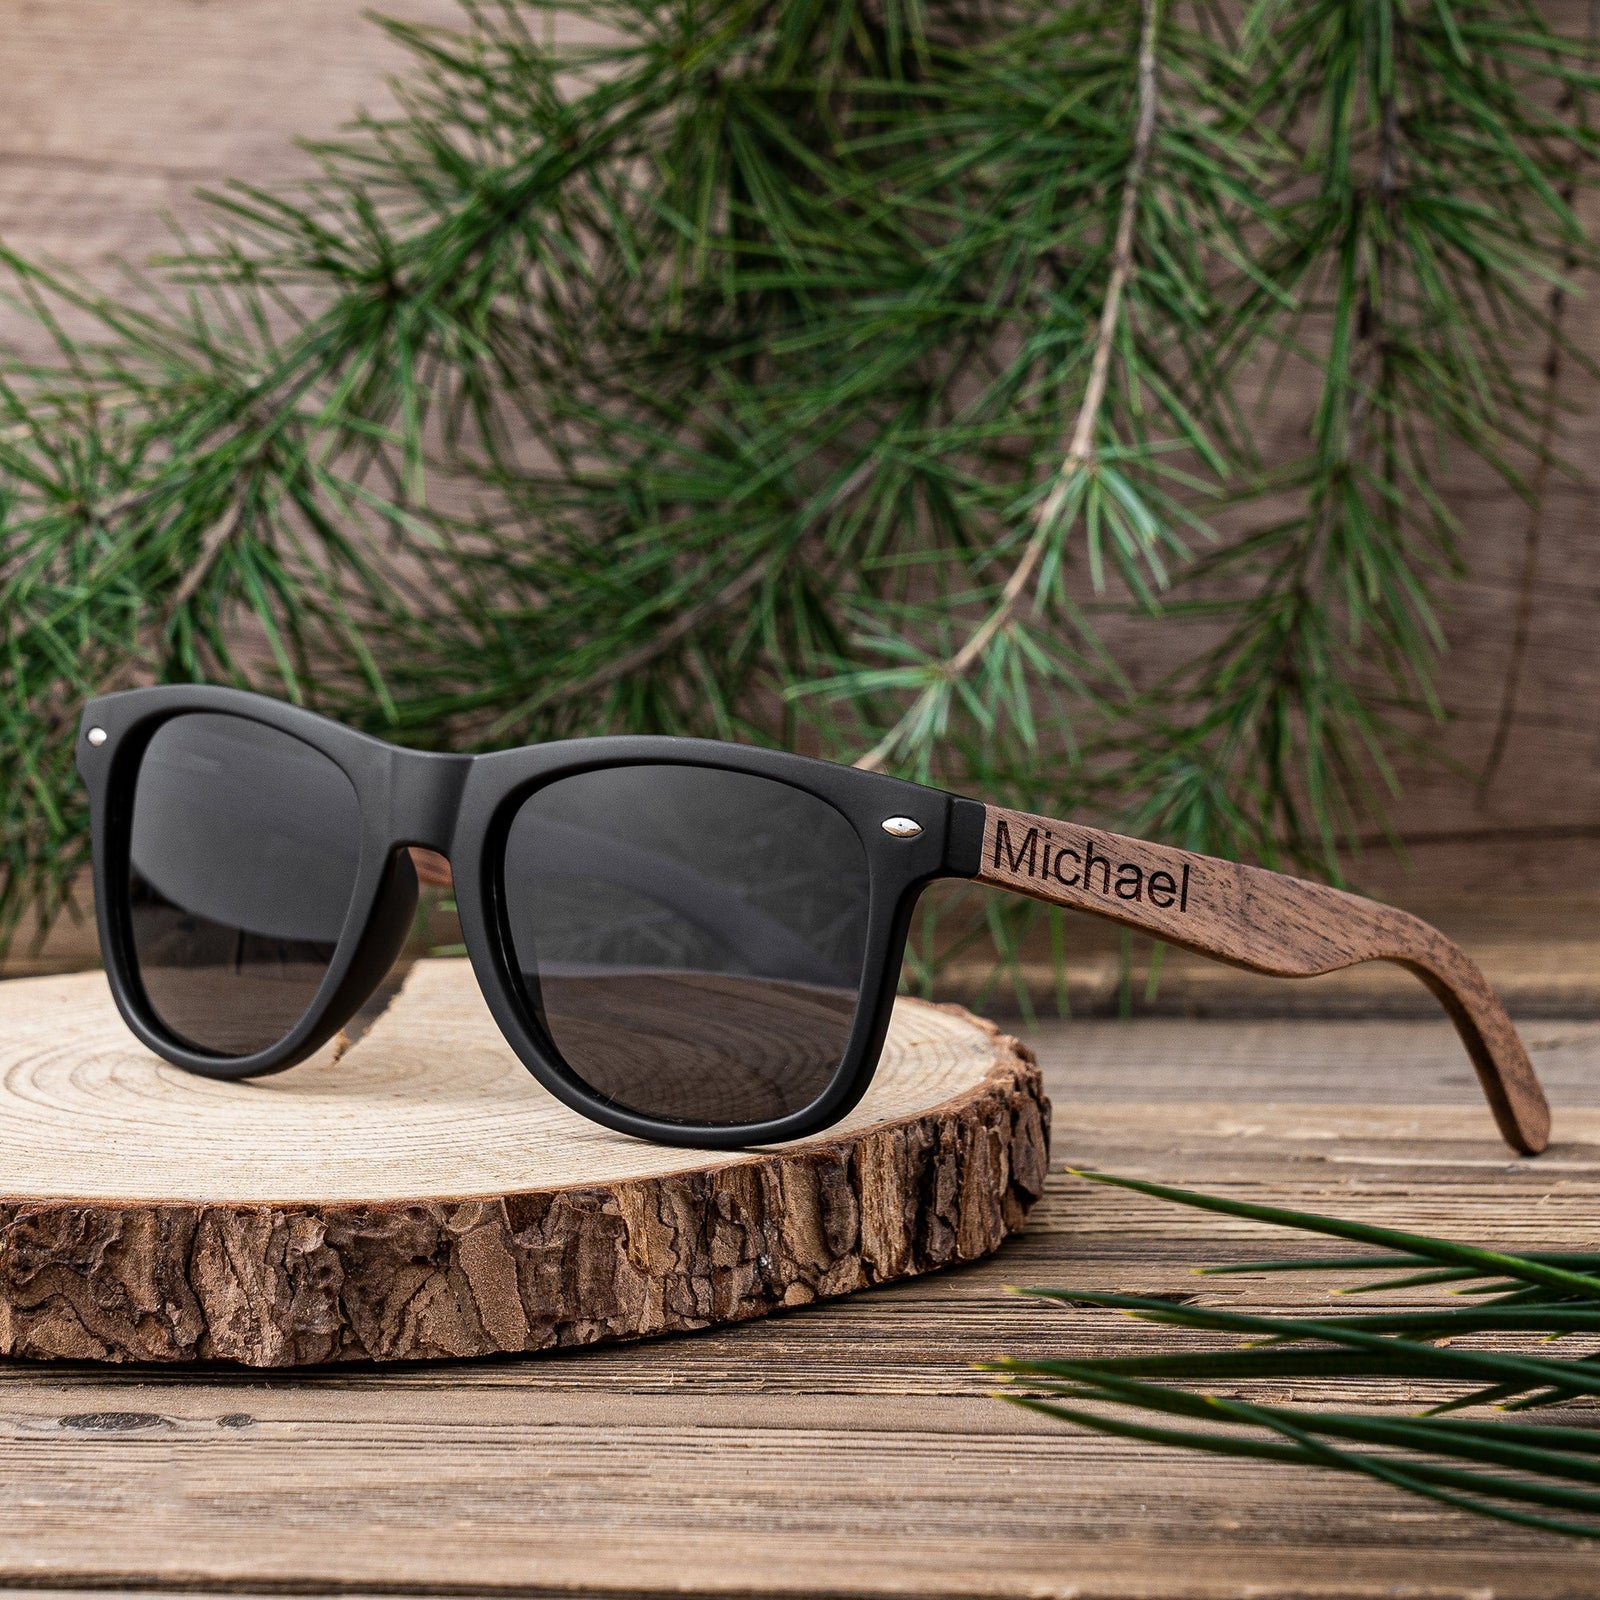 Groomsmen Sunglasses - Way Cool Wooden Wayfarers - GroomsDay